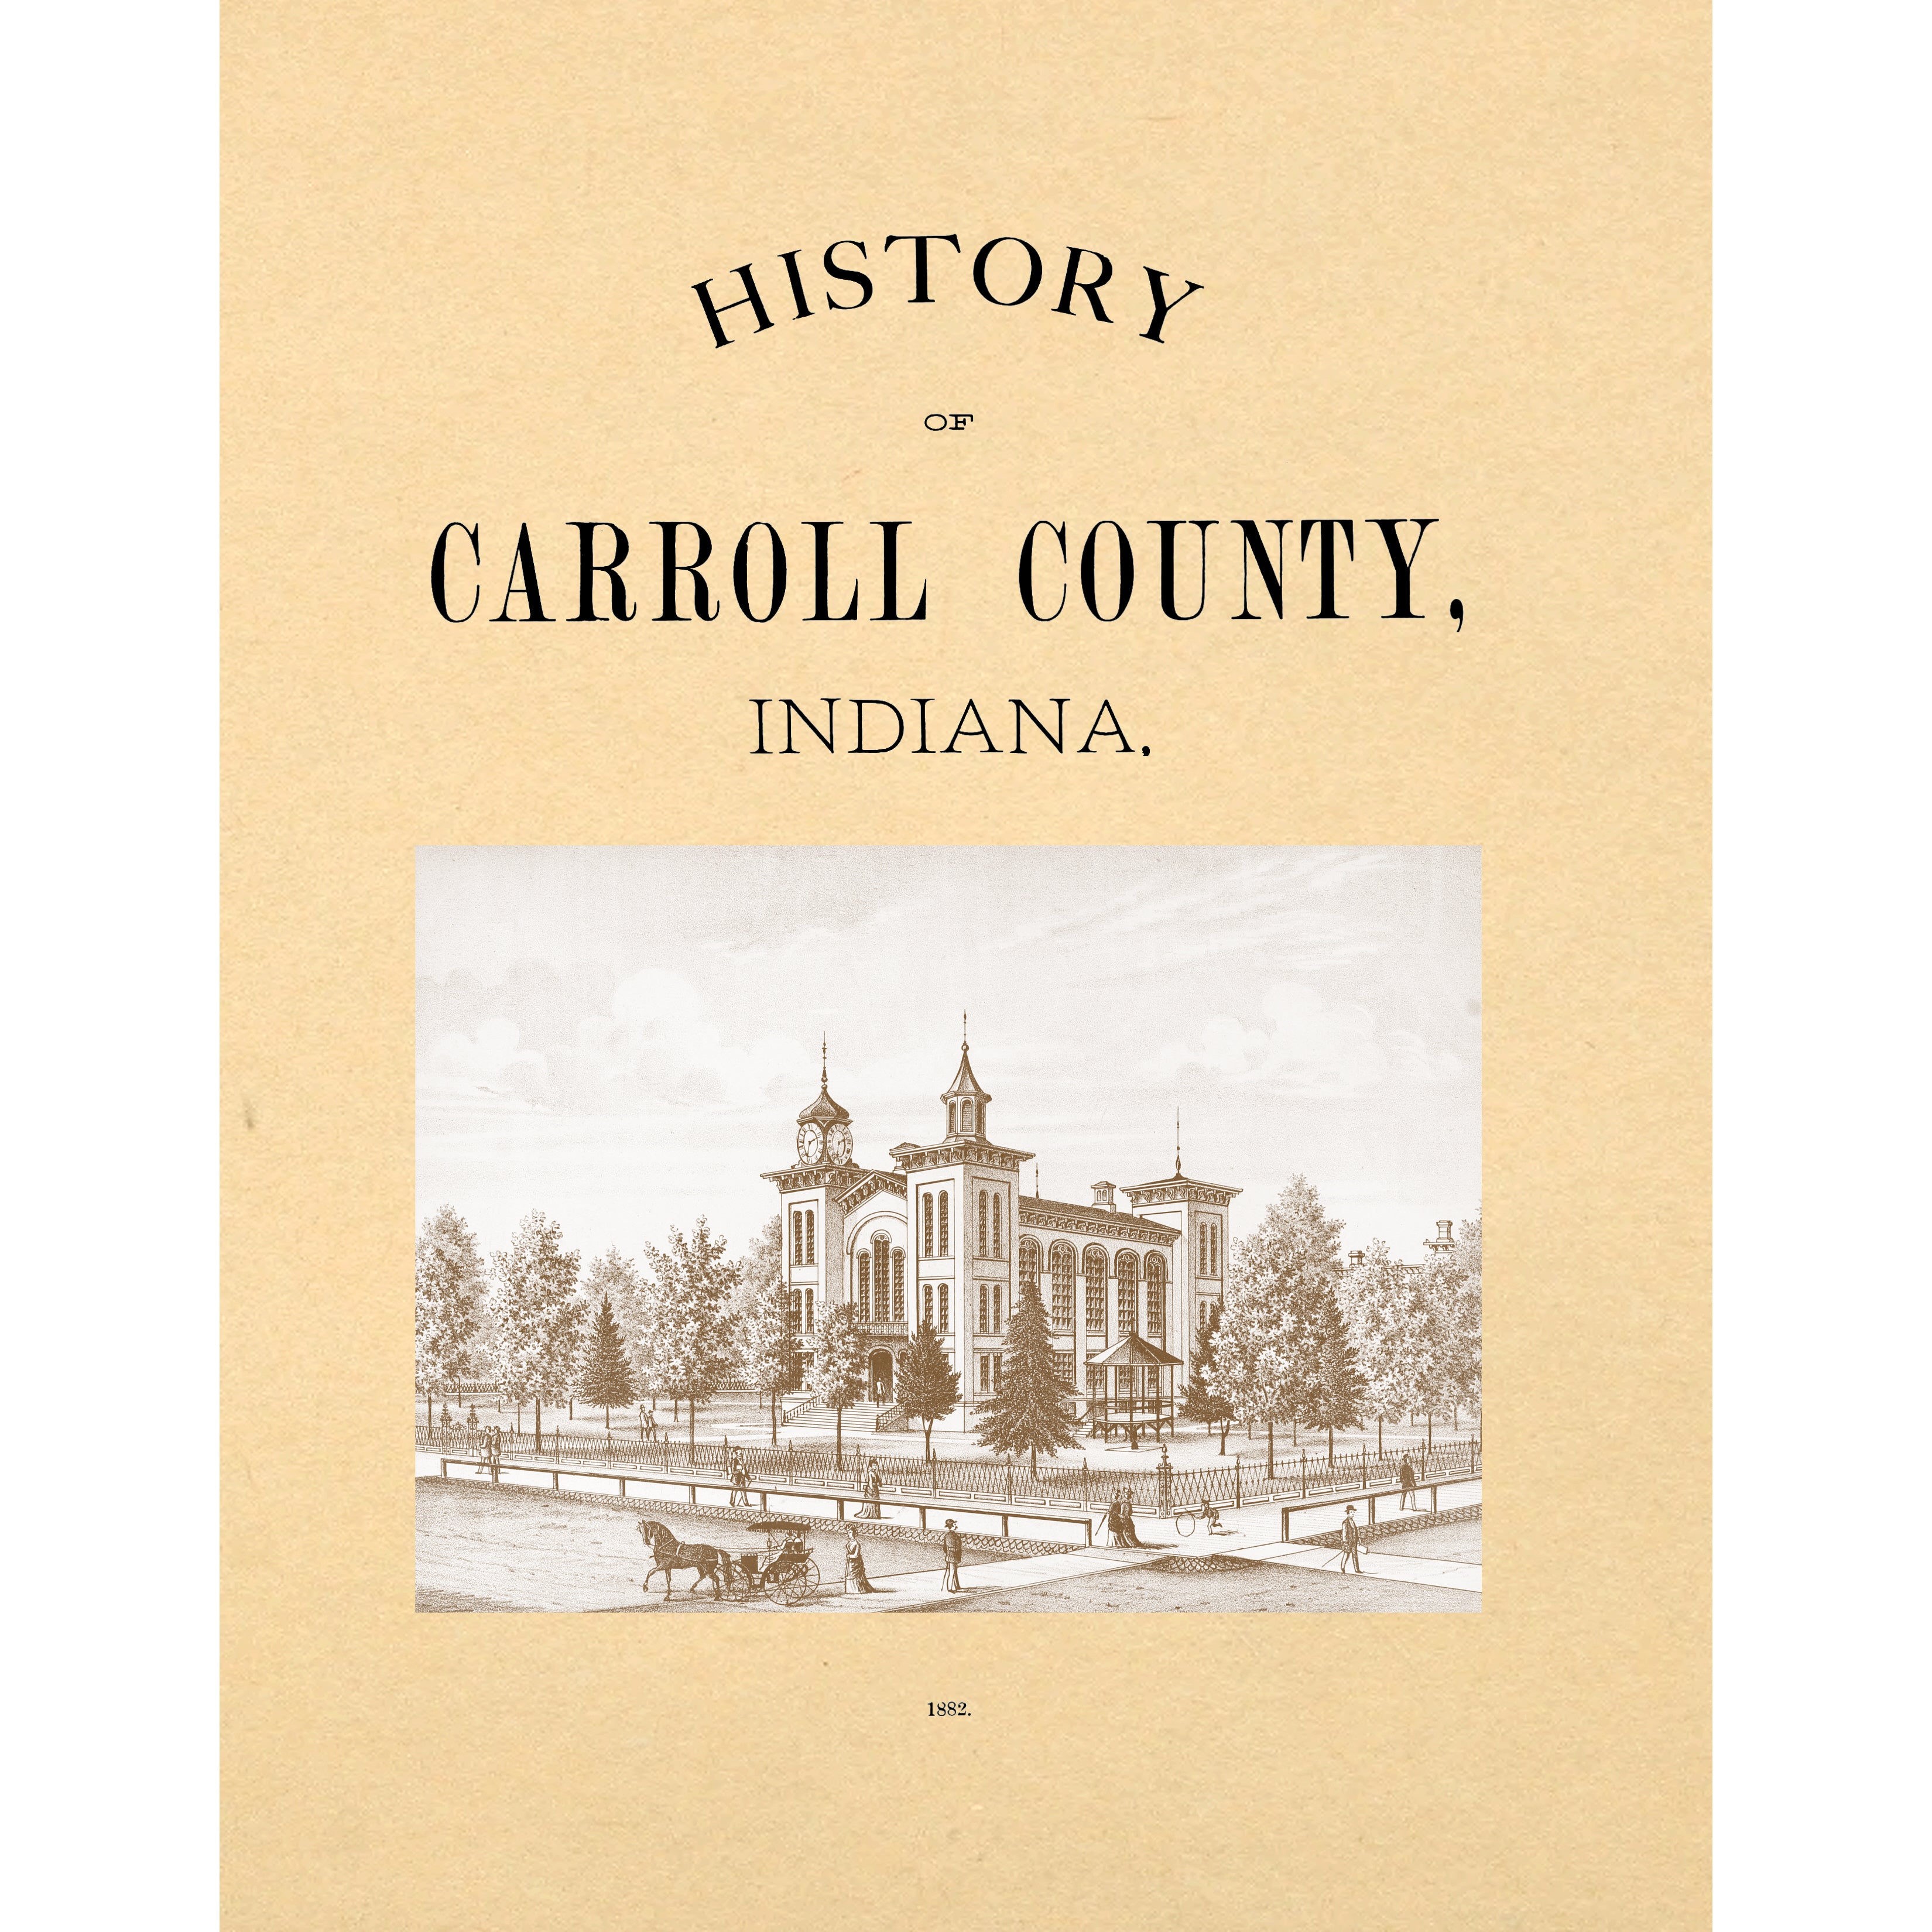 History of Carroll County Indiana